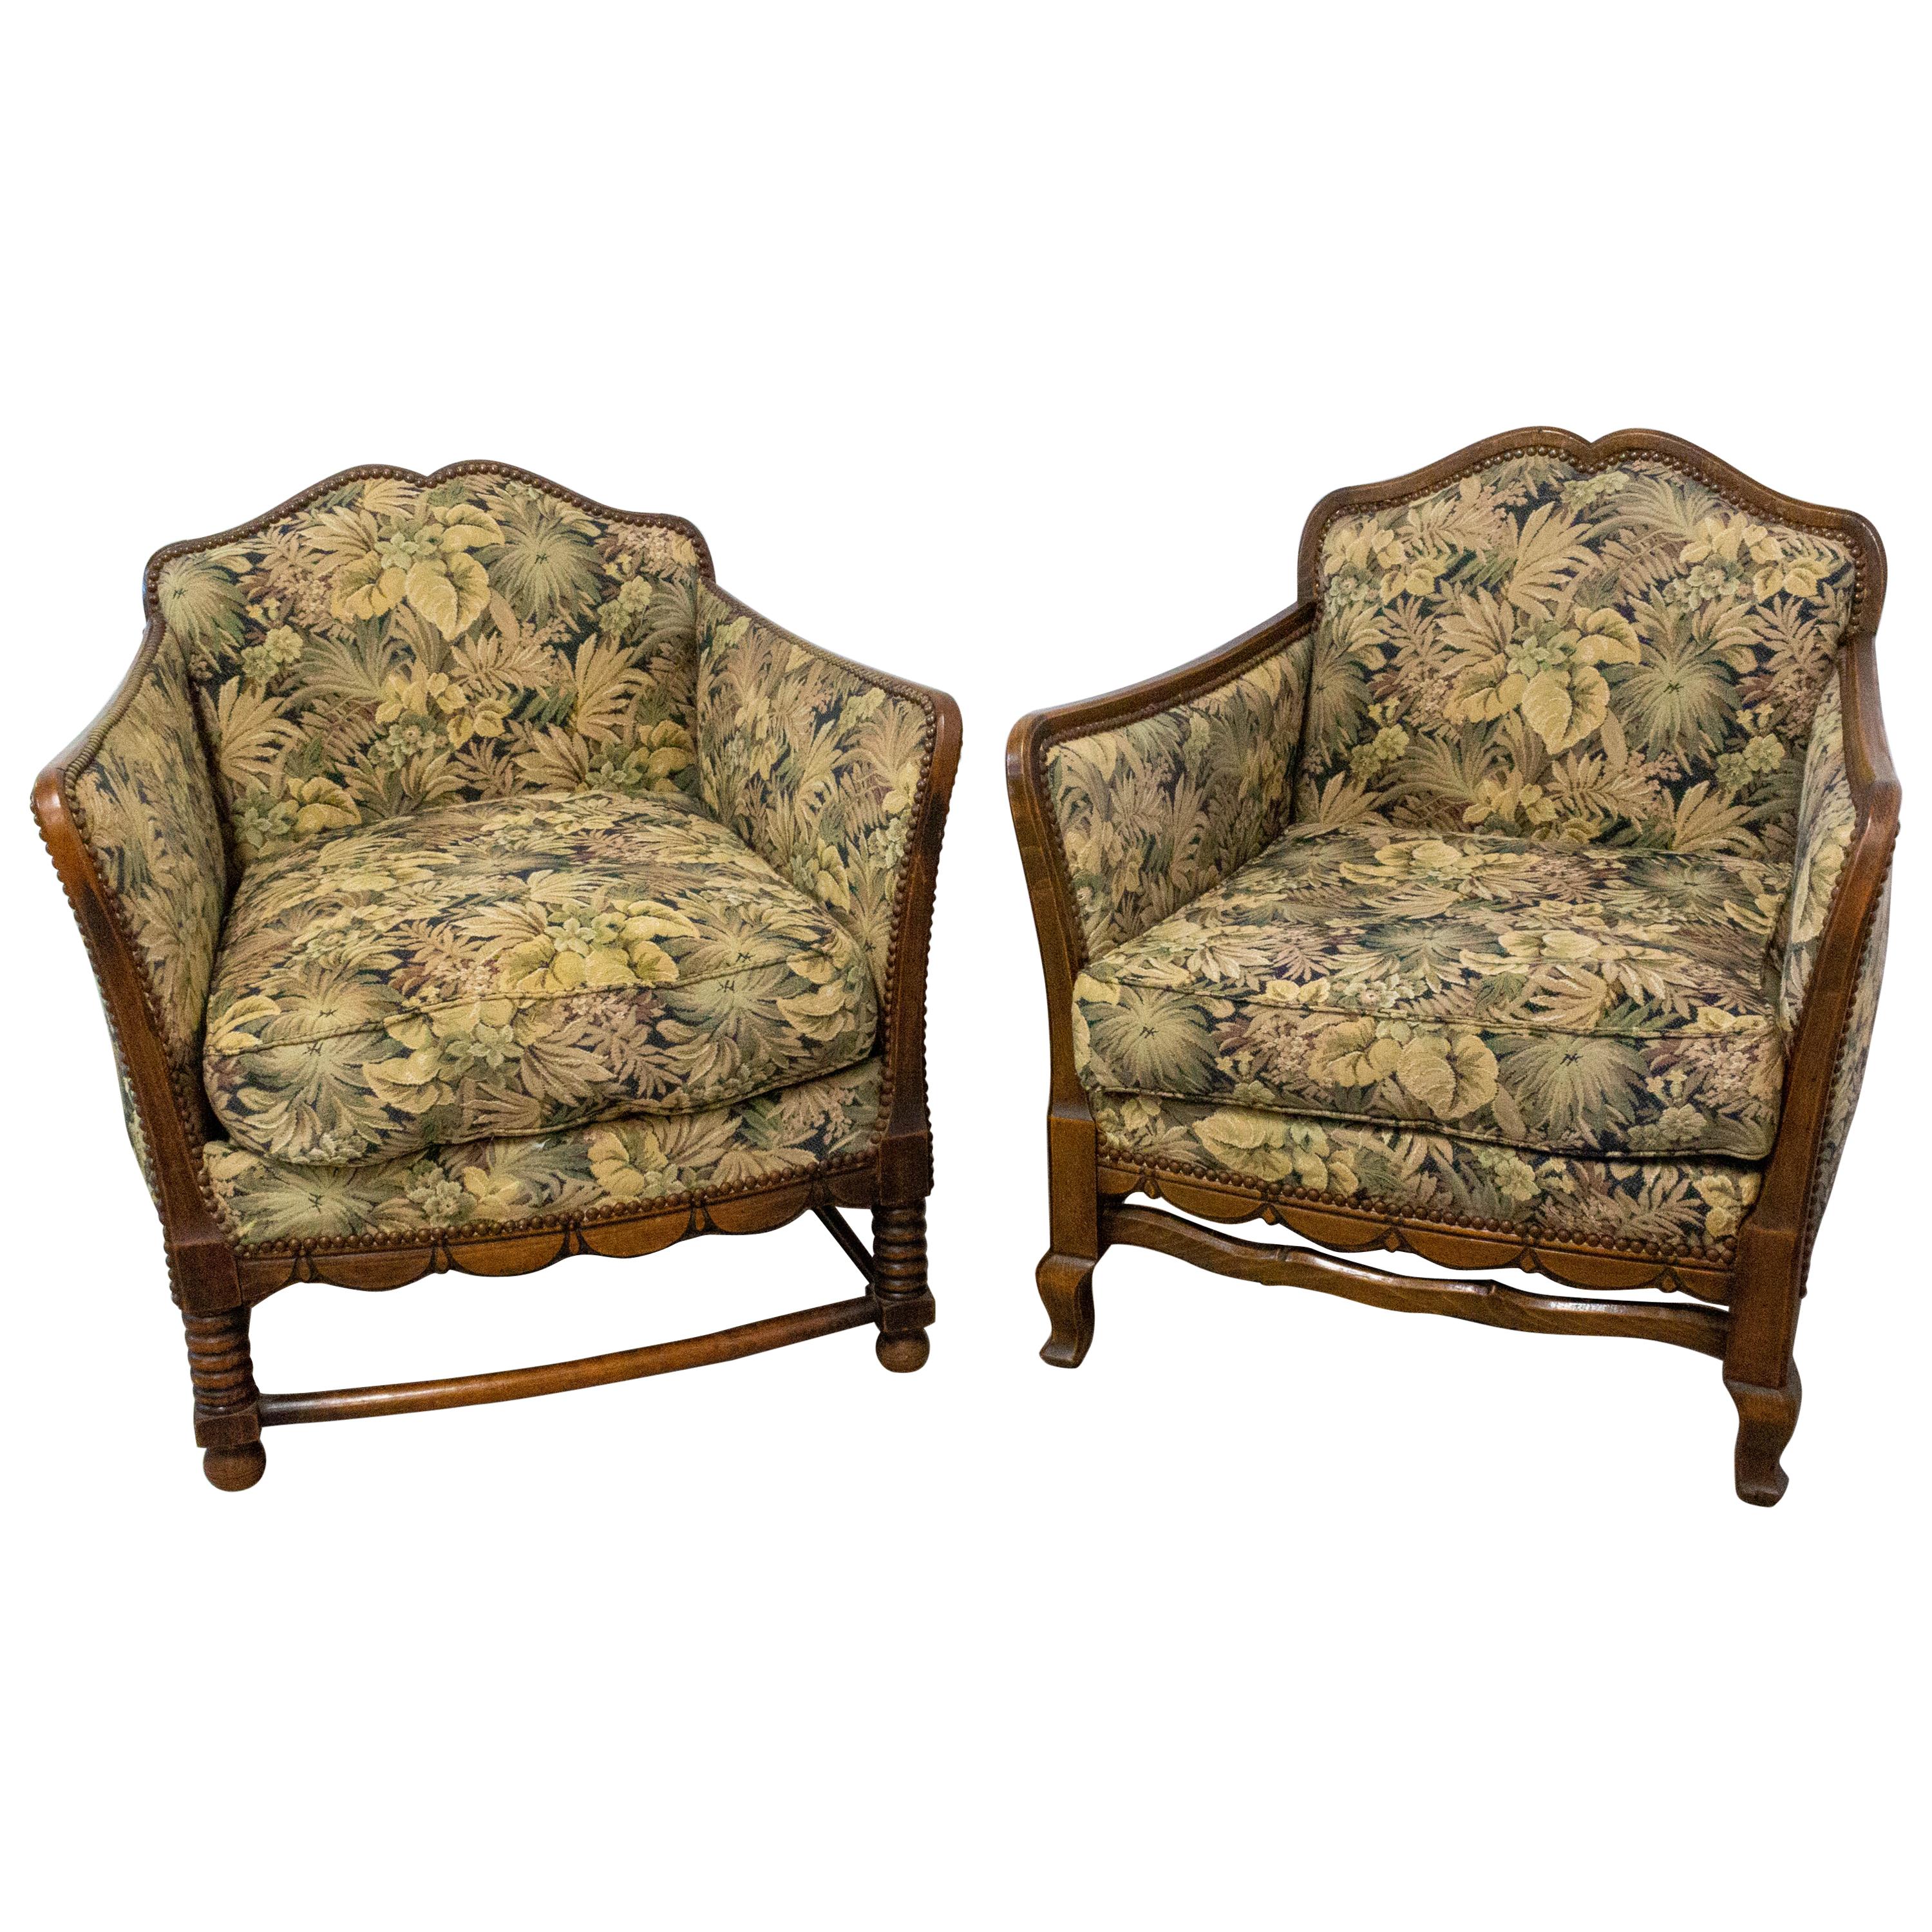 Zwei Sessel aus Buche, französisch, um frühes 20. Jahrhundert neu gepolstert zu werden